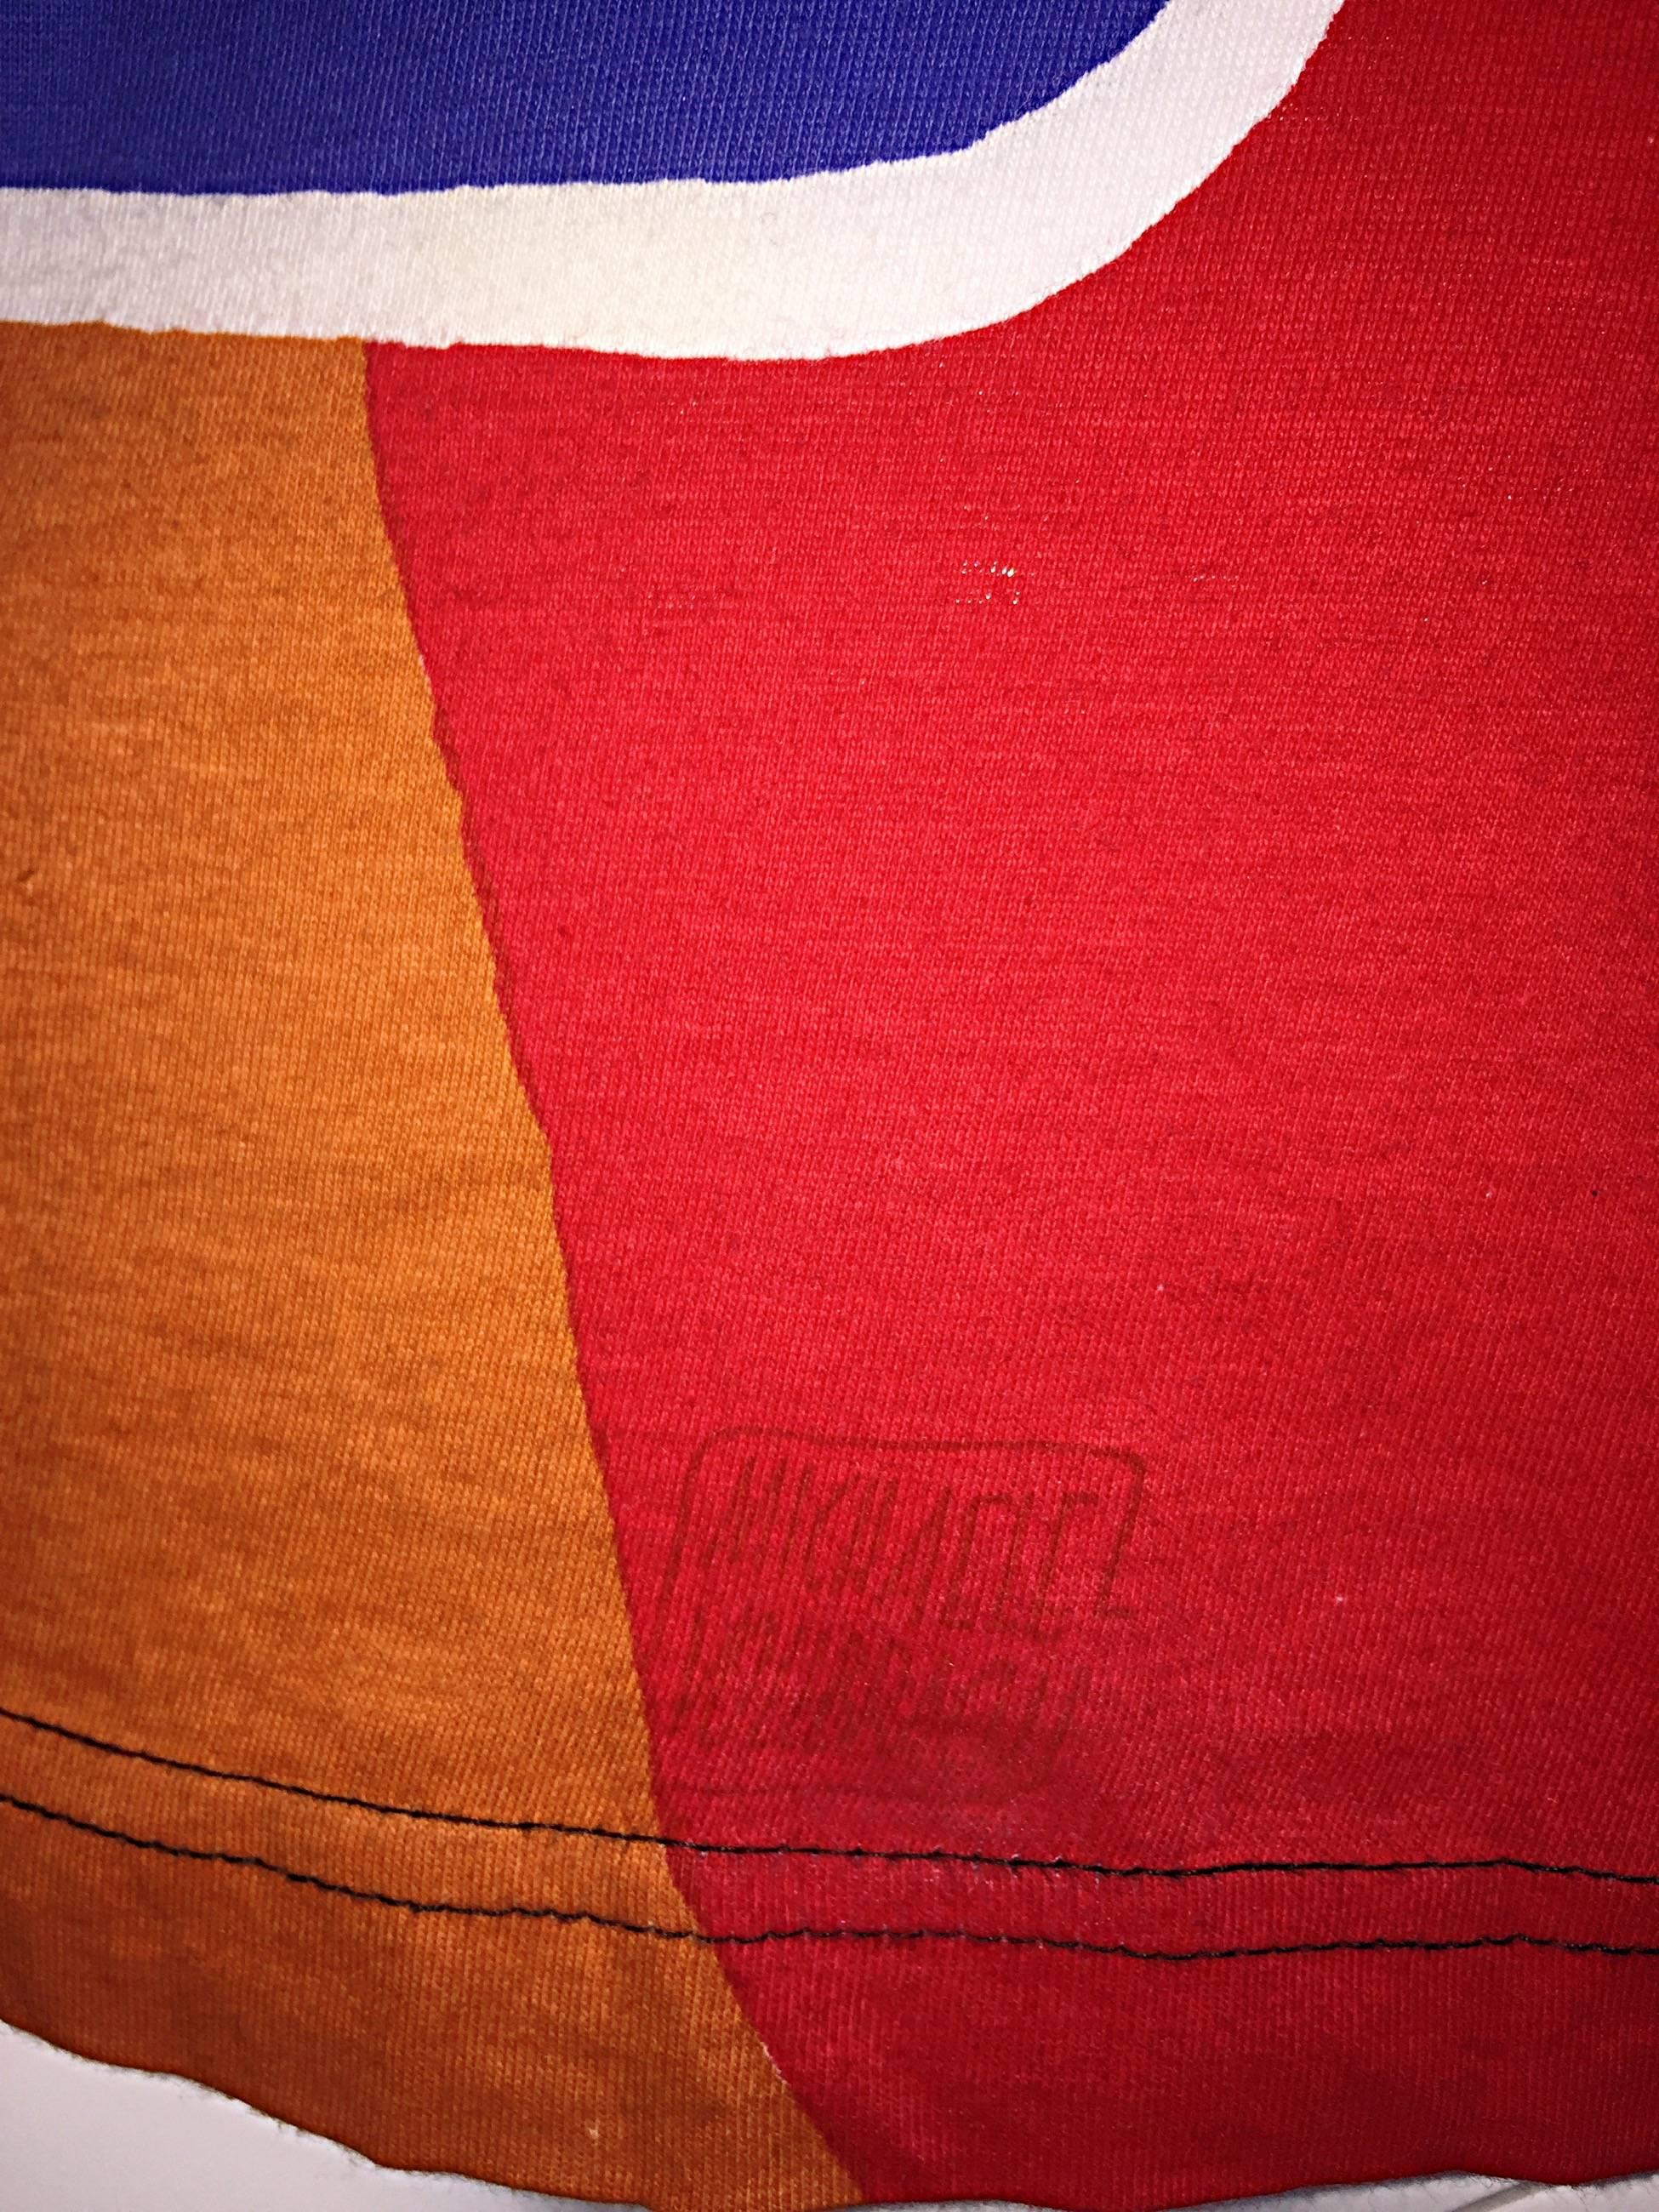 Red Vintage Michaele Vollbracht ' Bow & Arrow ' Op - Art Rare Color Block Top Blouse For Sale